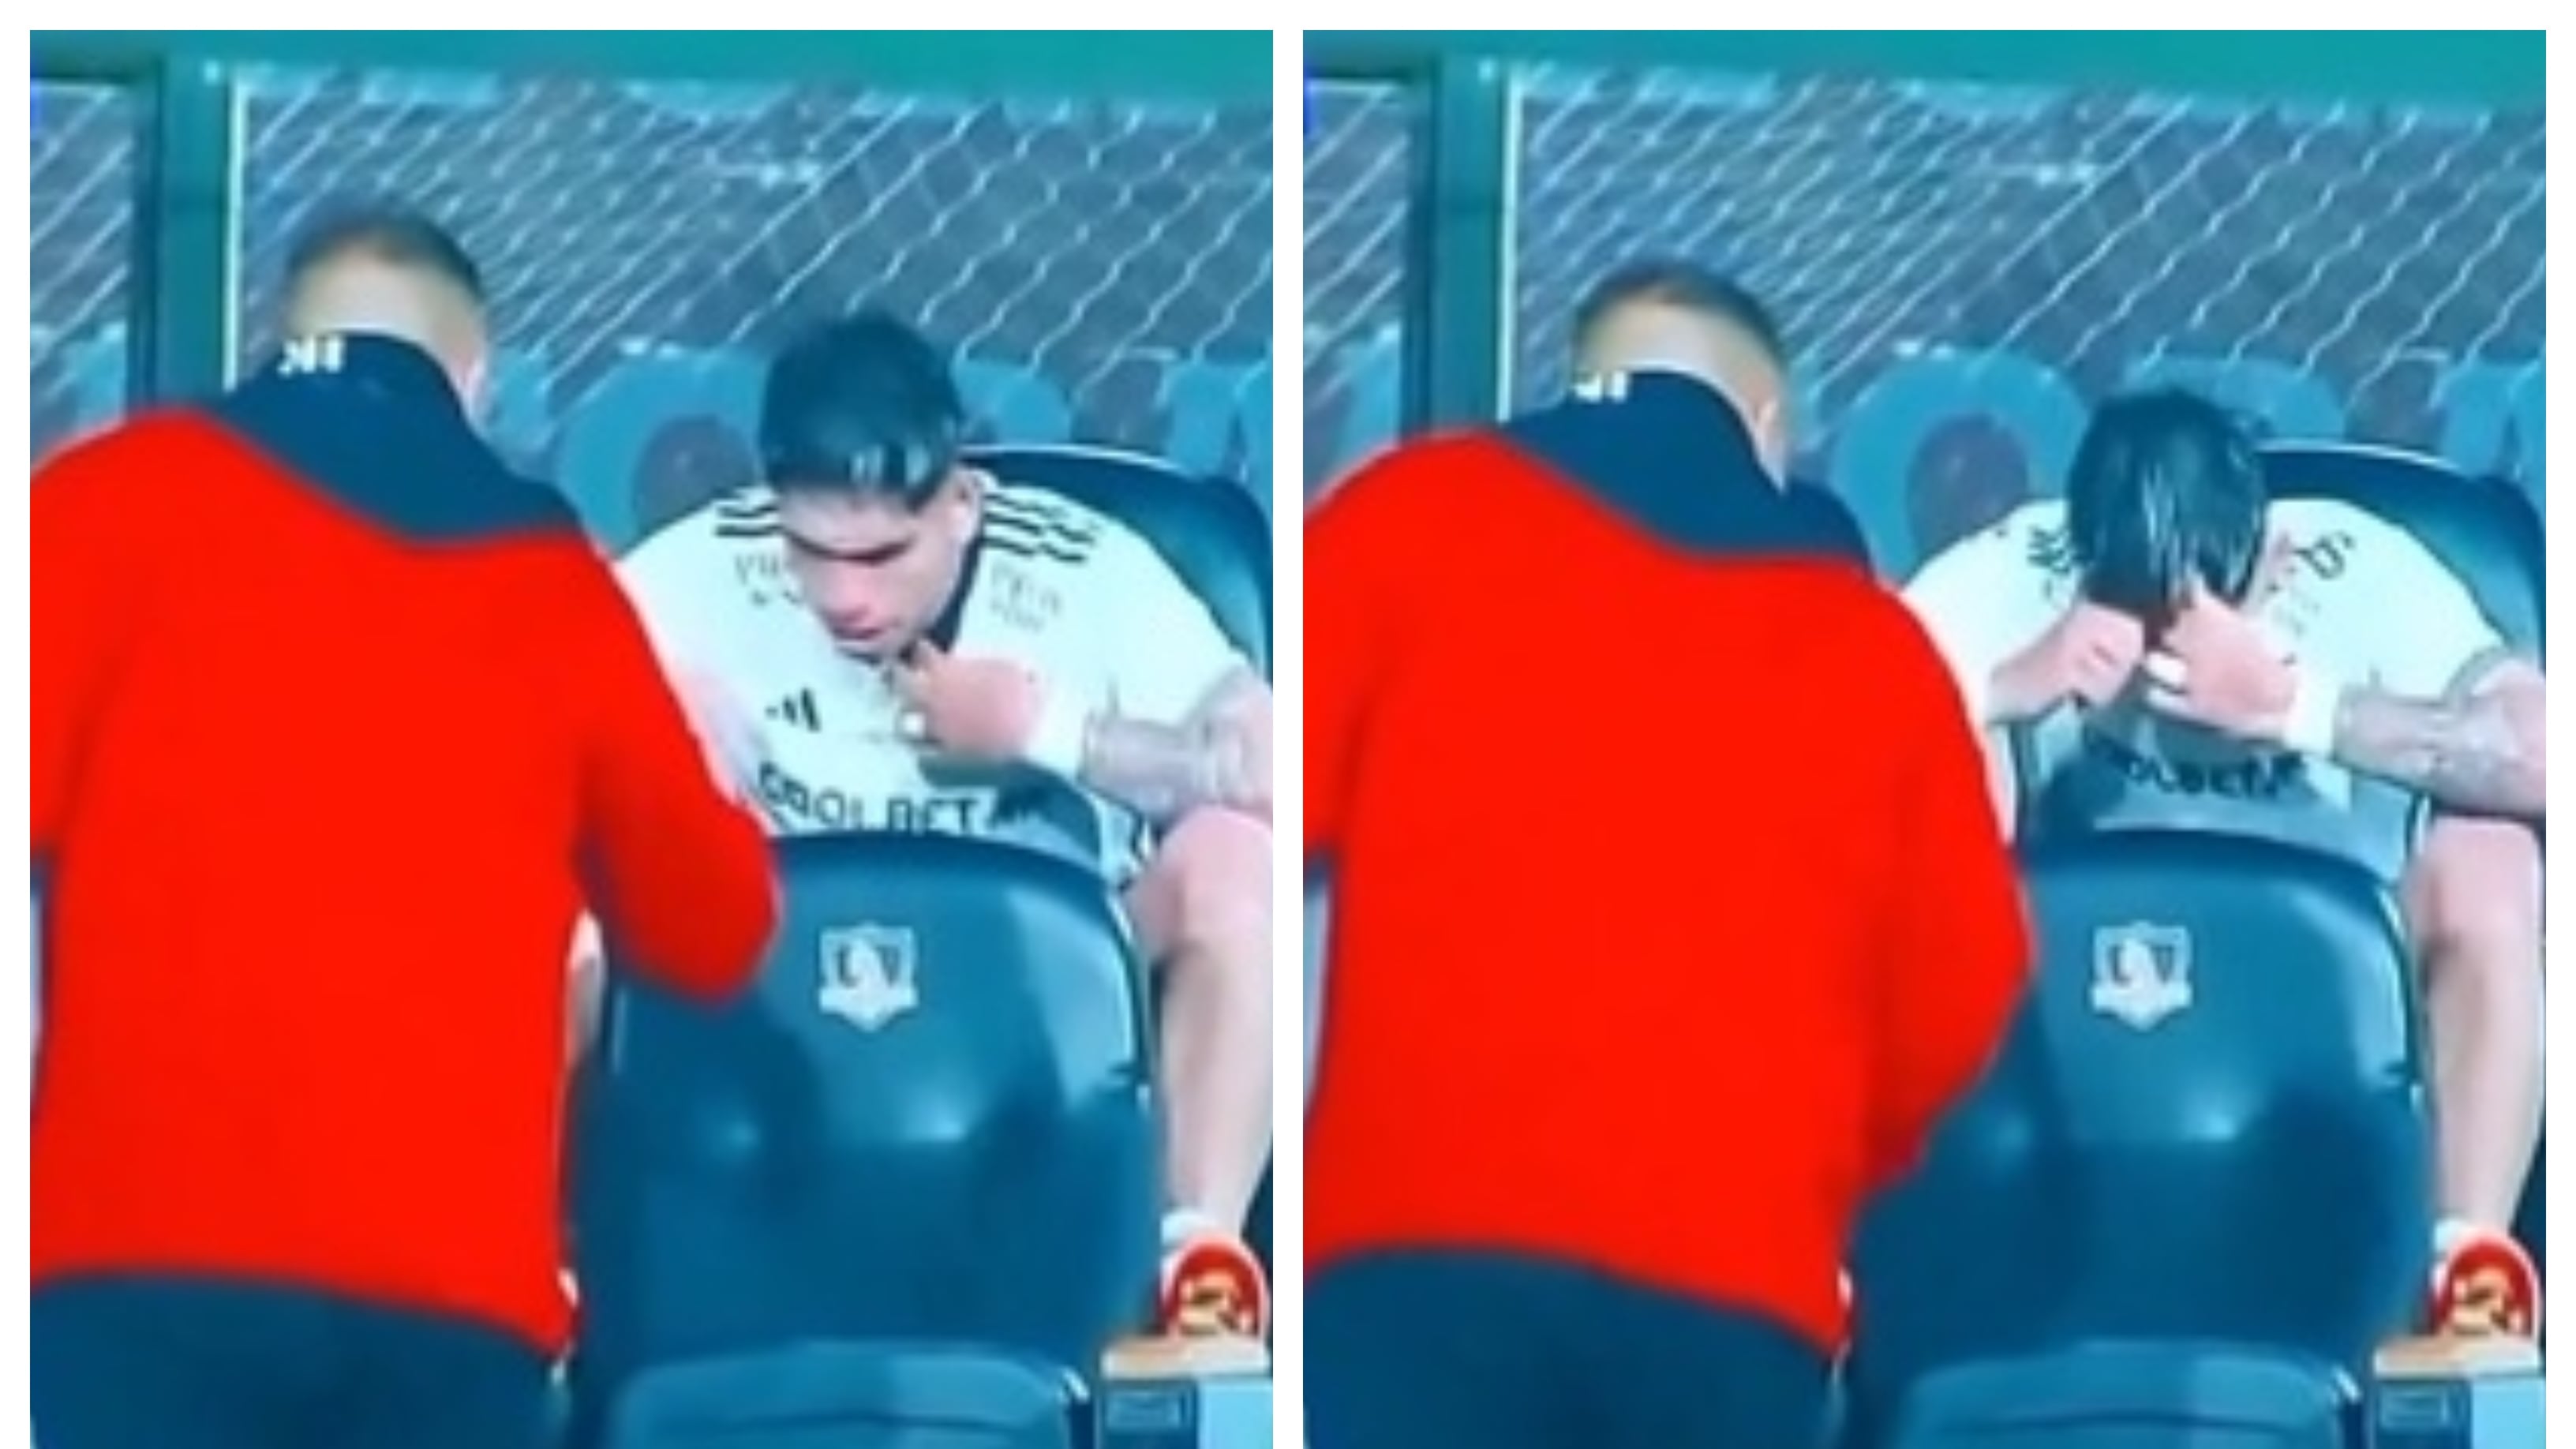 Los usuarios de redes sociales y algunos comentarista deportivos criticaron a Palacios y apoyaron a Almirón en la discusión que ambos tuvieron en el partido de Colo Colo y Deportes Copiapó.